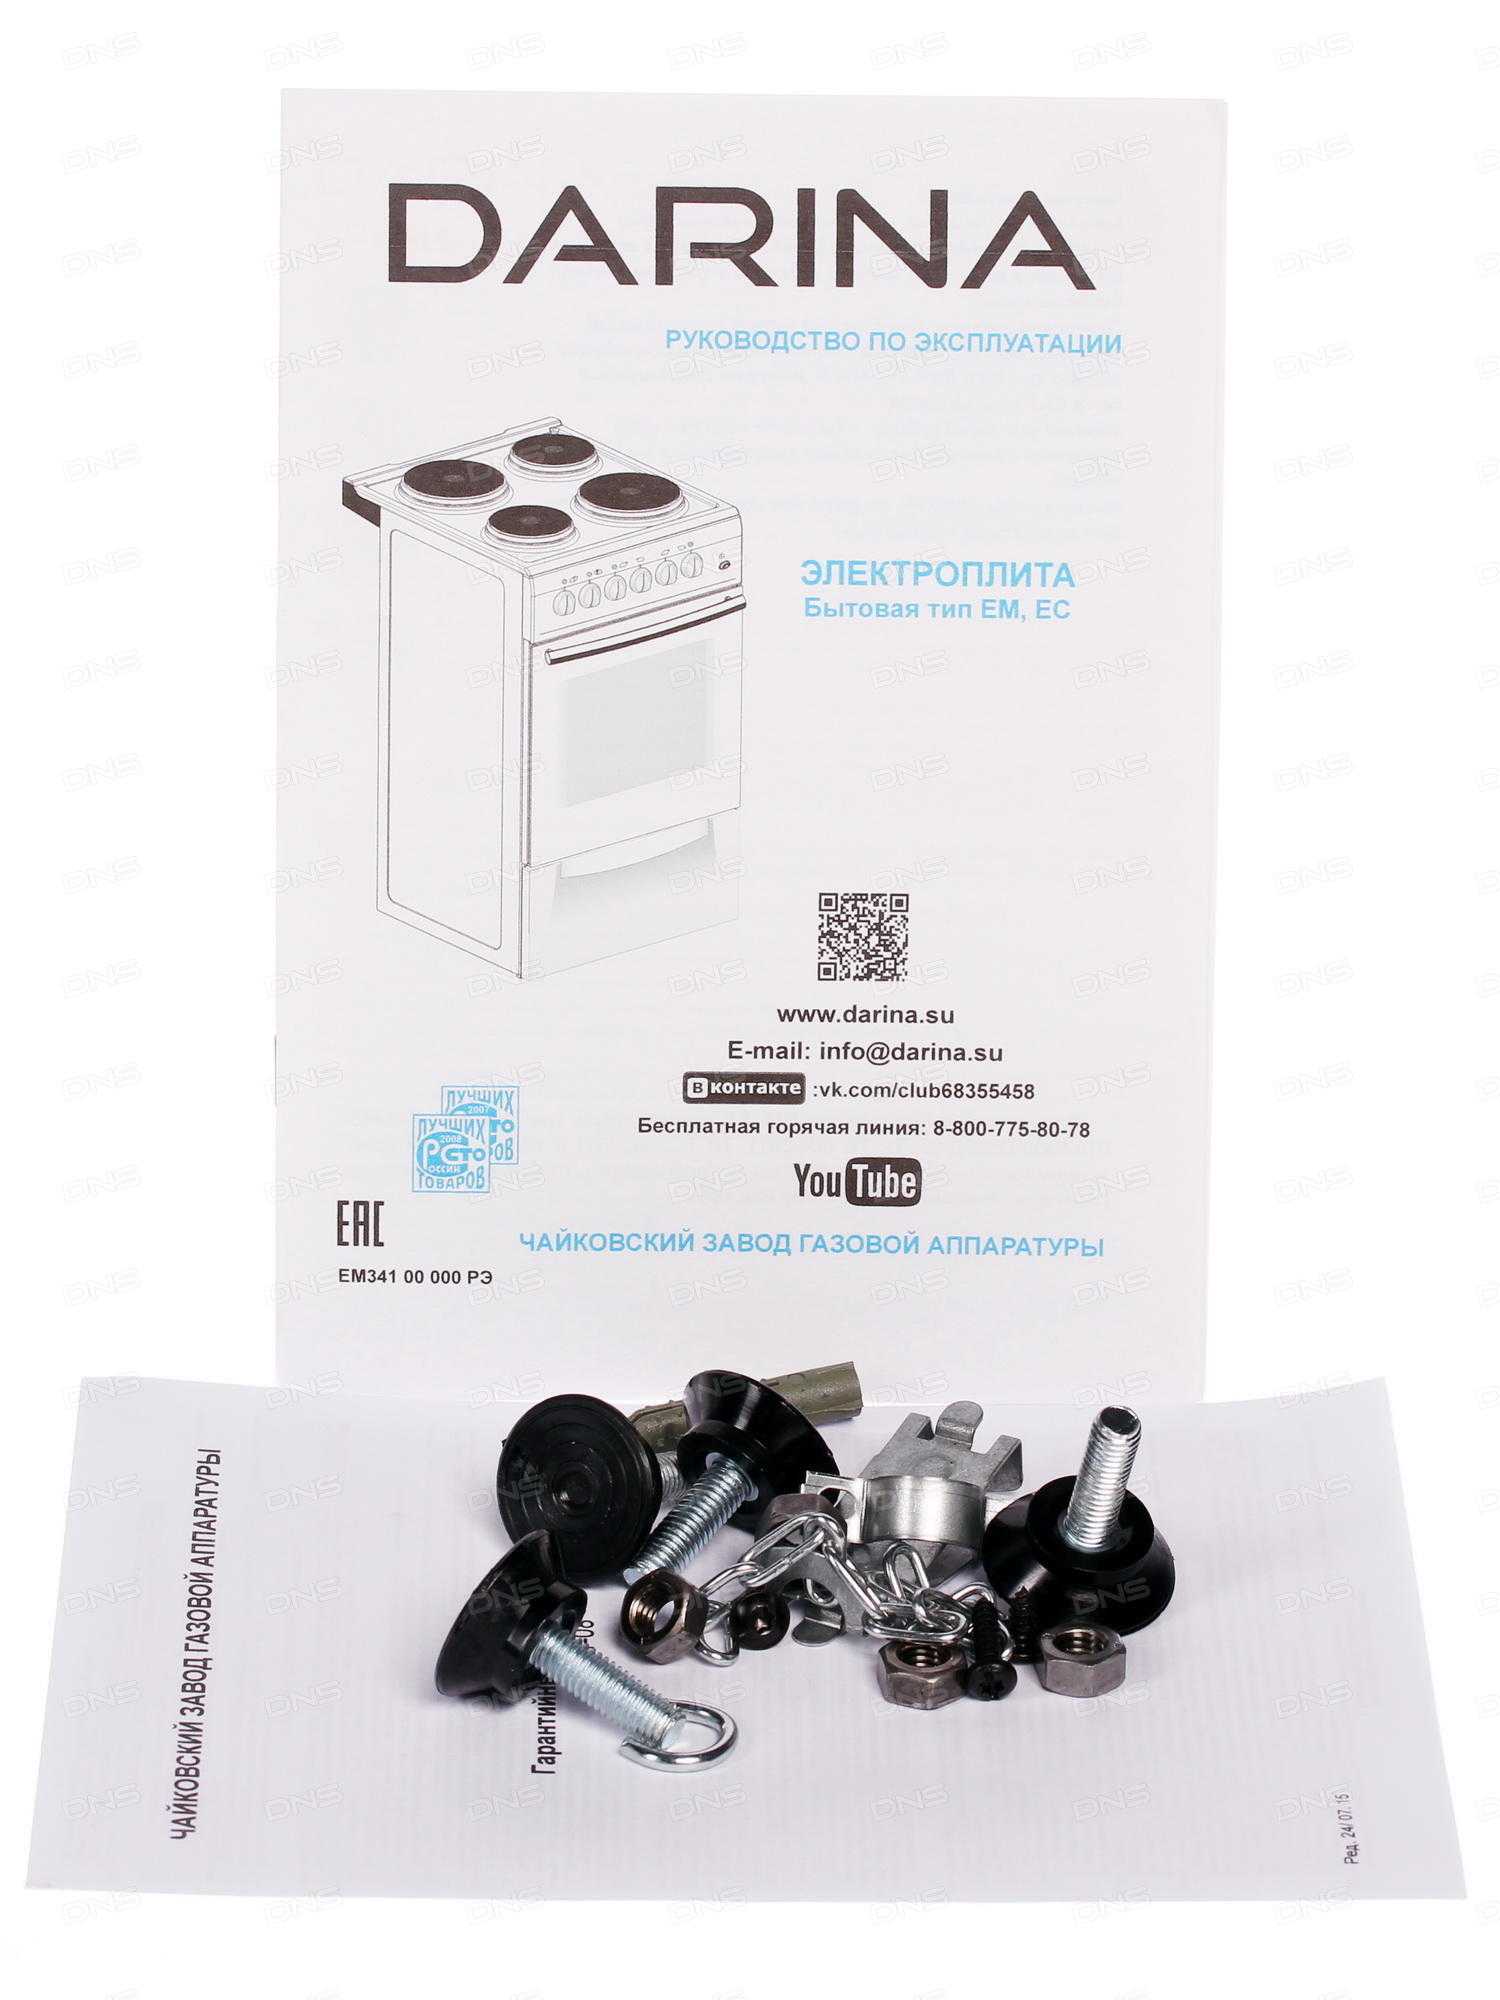 DARINA 1B EC331 606 W - короткий но максимально информативный обзор Для большего удобства добавлены характеристики отзывы и видео